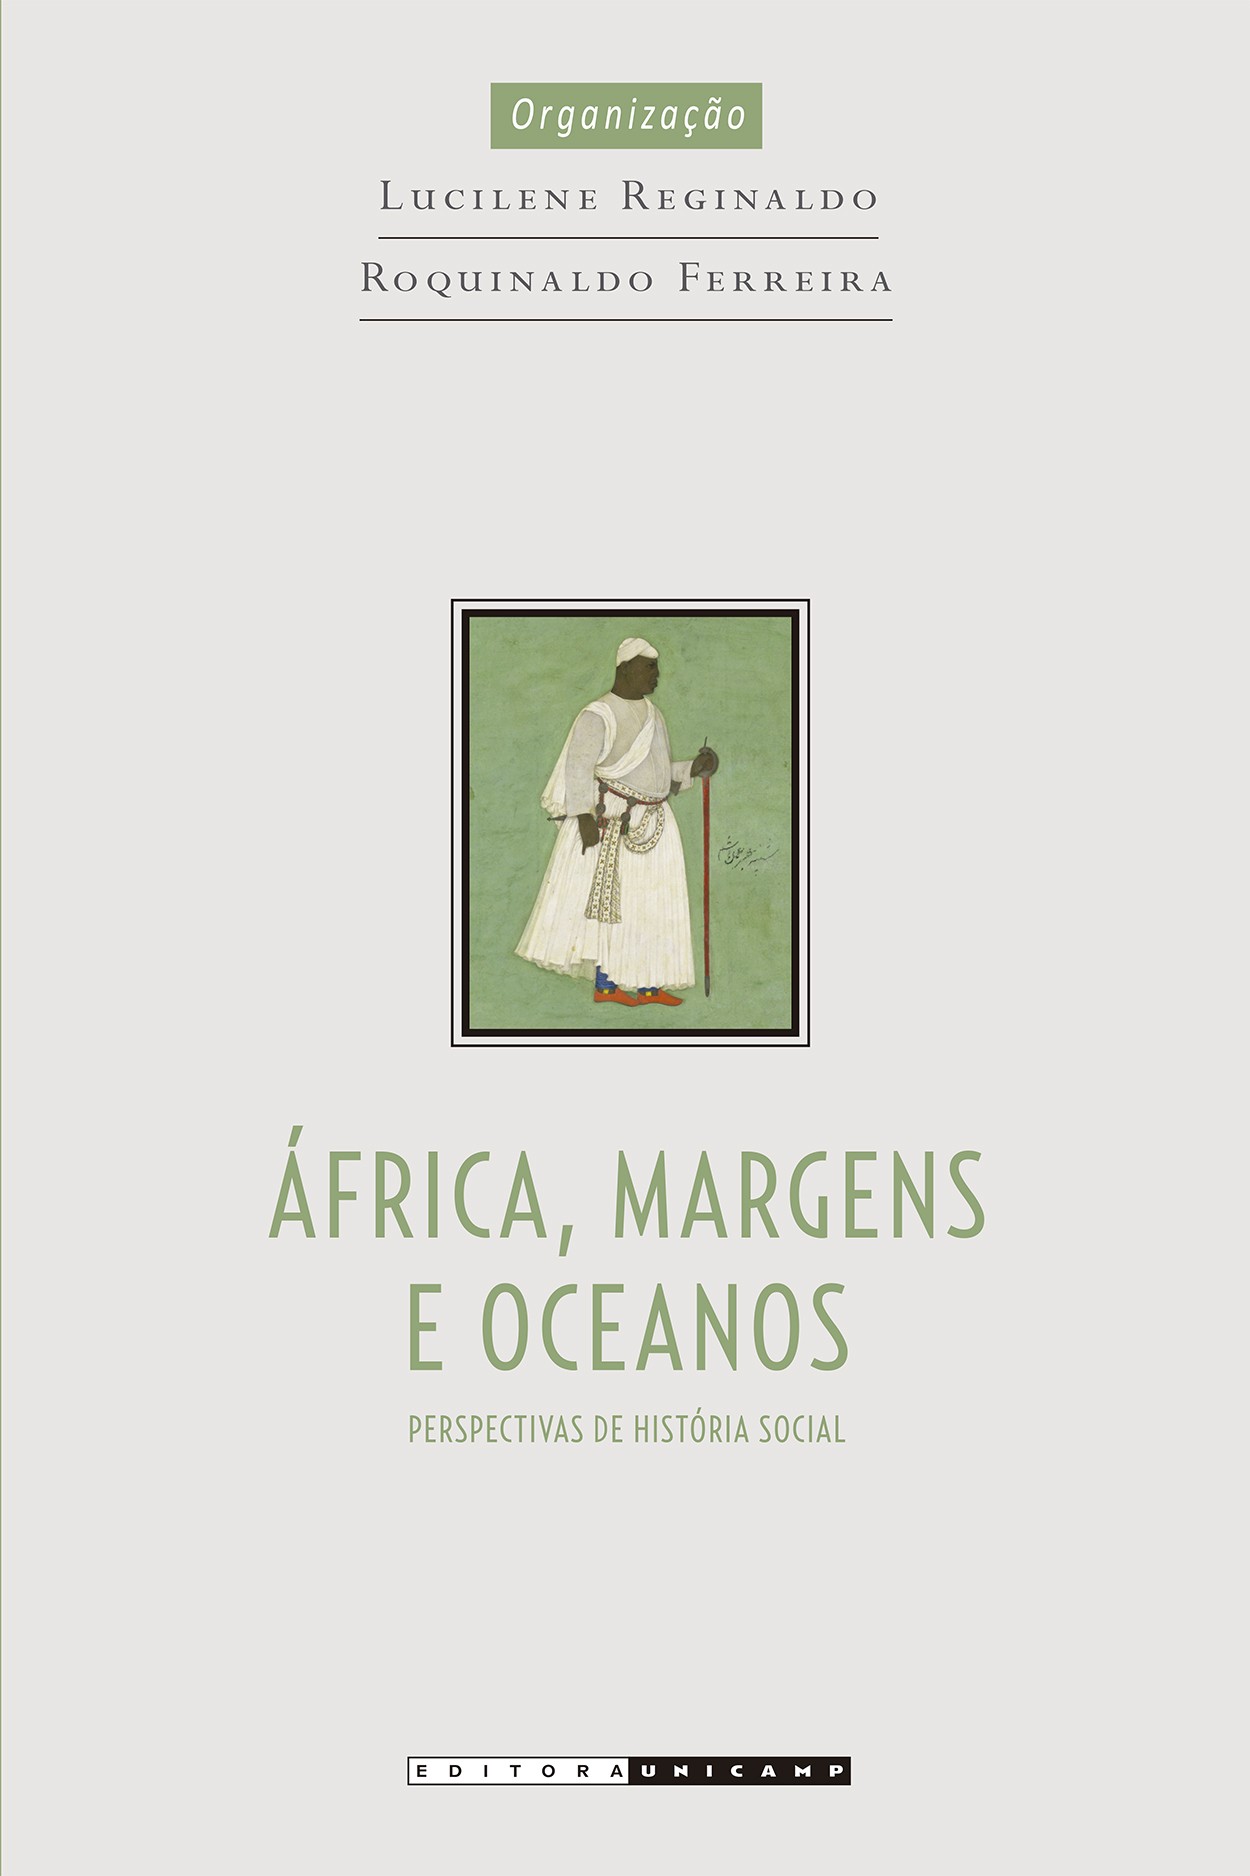  África, margens e oceanos: perspectivas de história social, organizado por Lucilene Reginaldo e Roquinaldo Ferreira (Editora Unicamp, 560 páginas, R$ 100) (Foto: Divulgação)